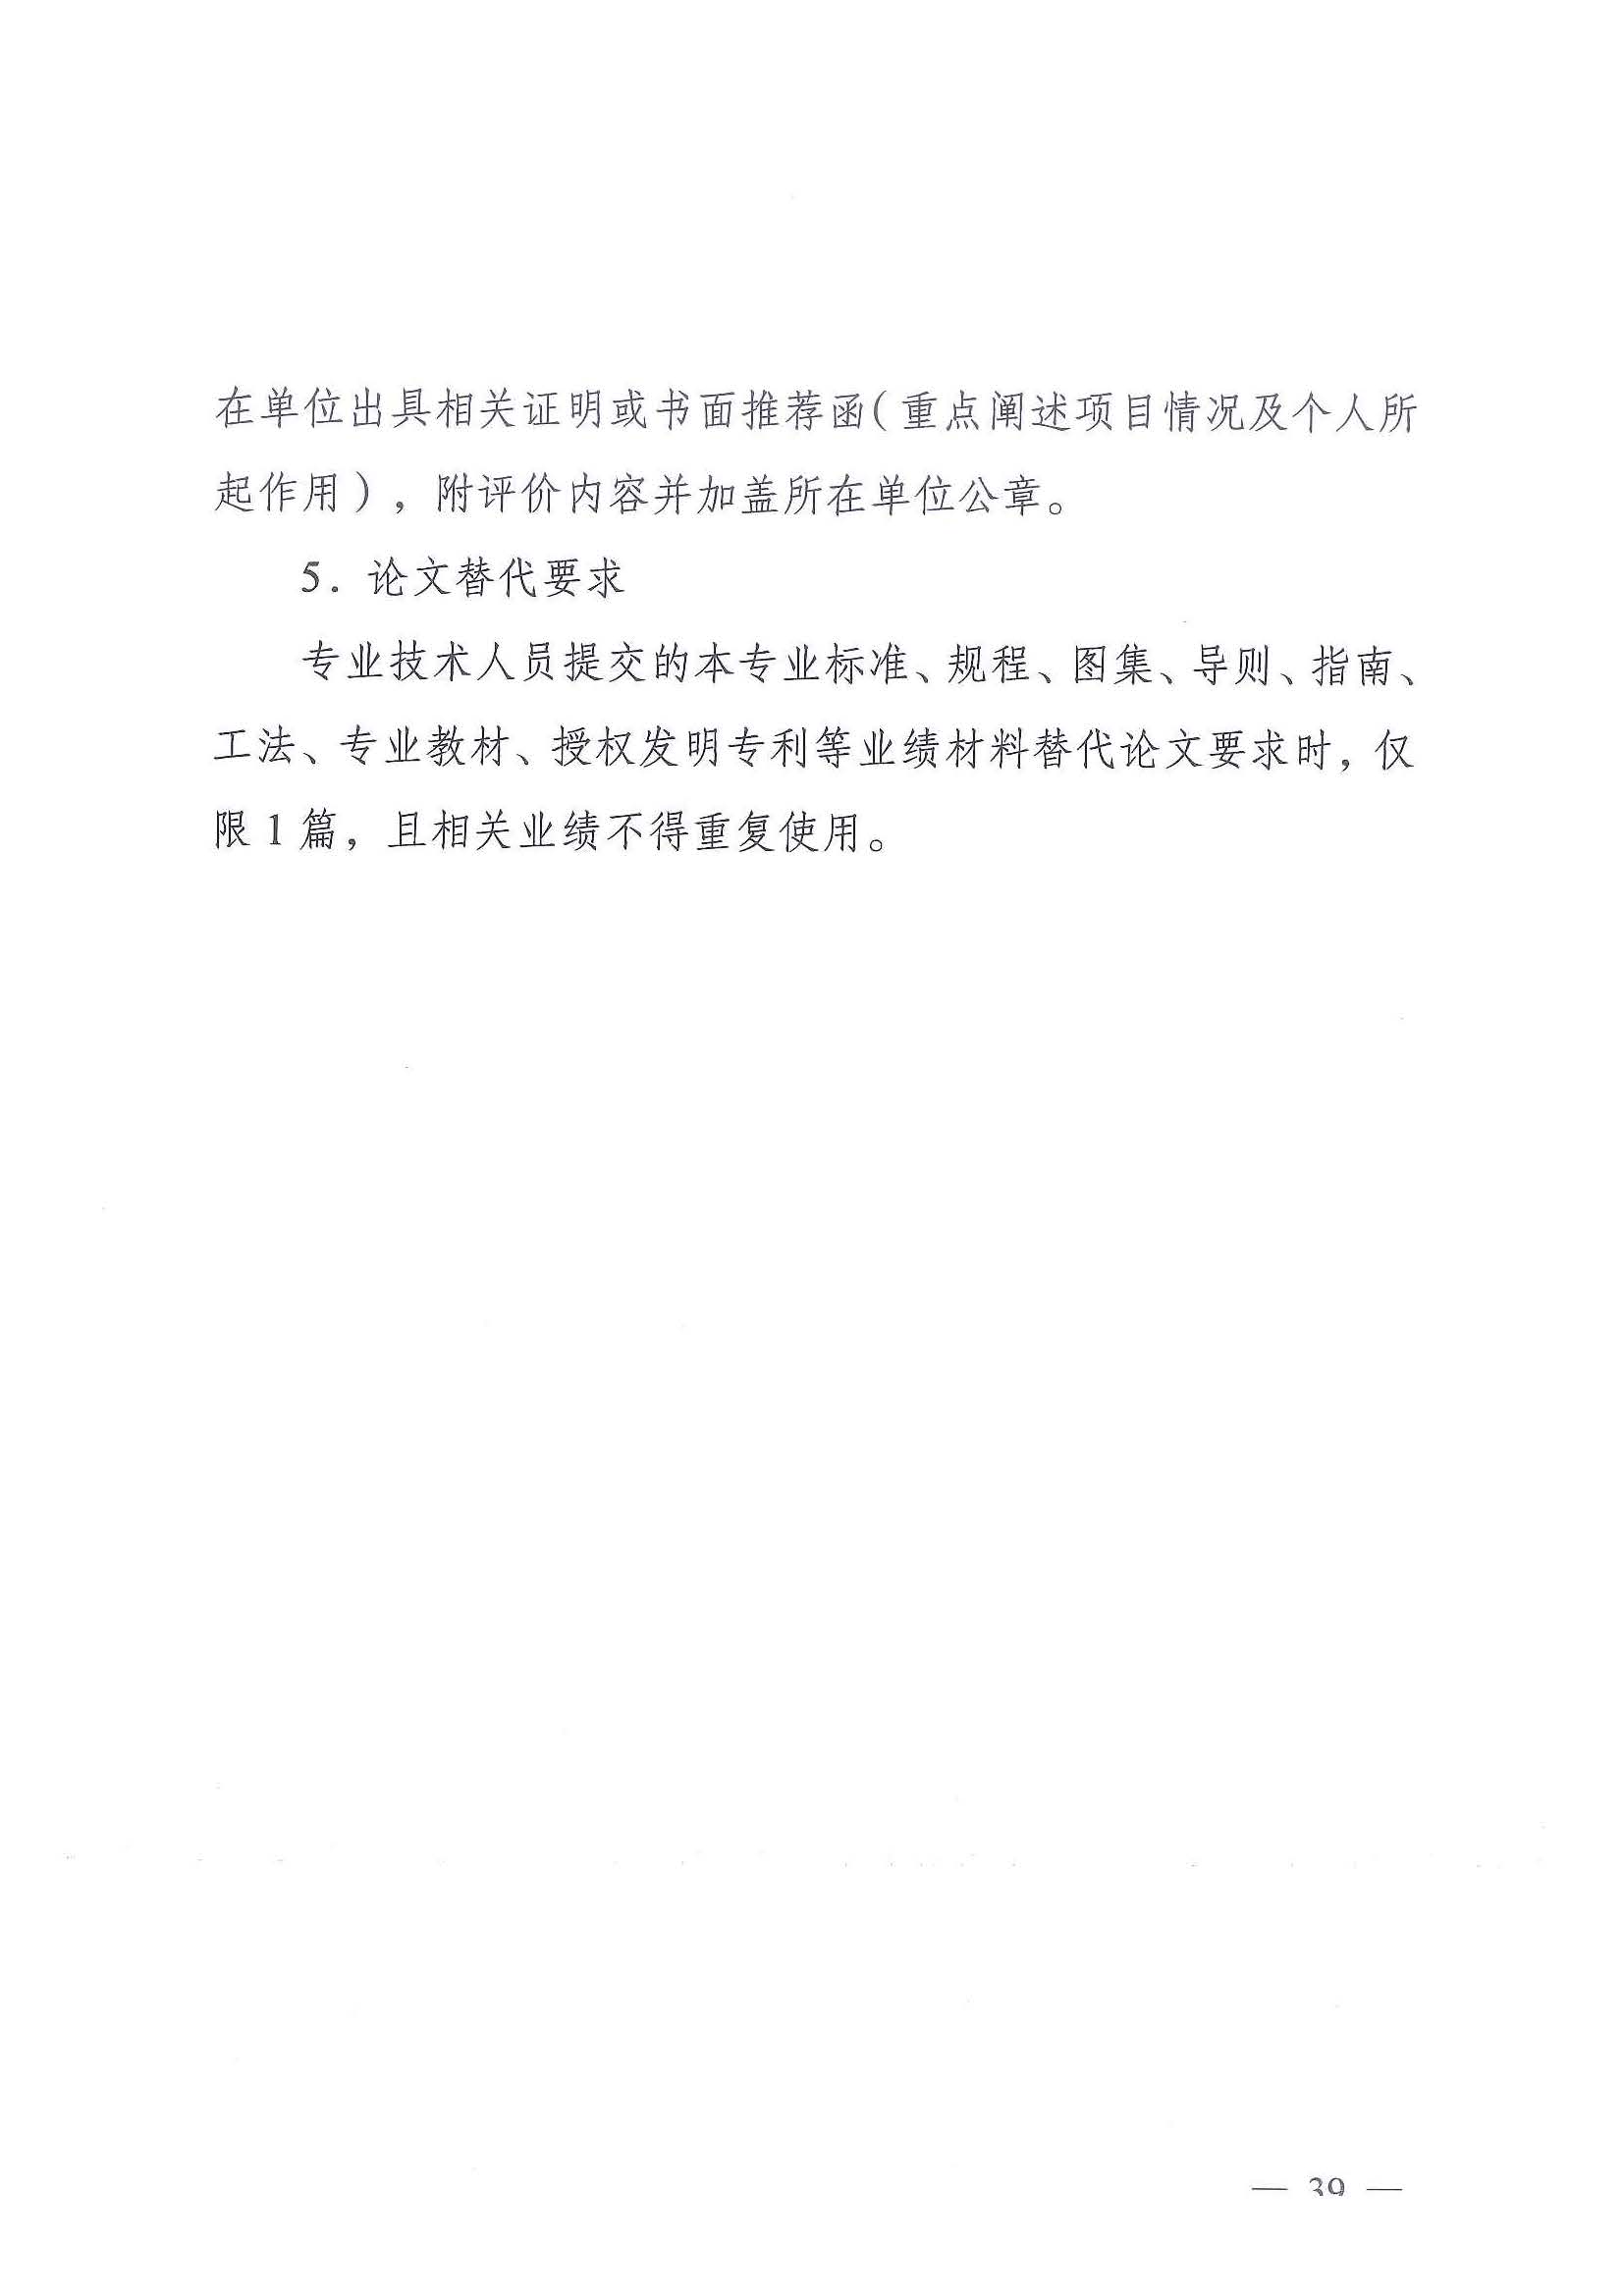 《江苏省交通运输工程专业技术资格条件（试行）》-苏职称